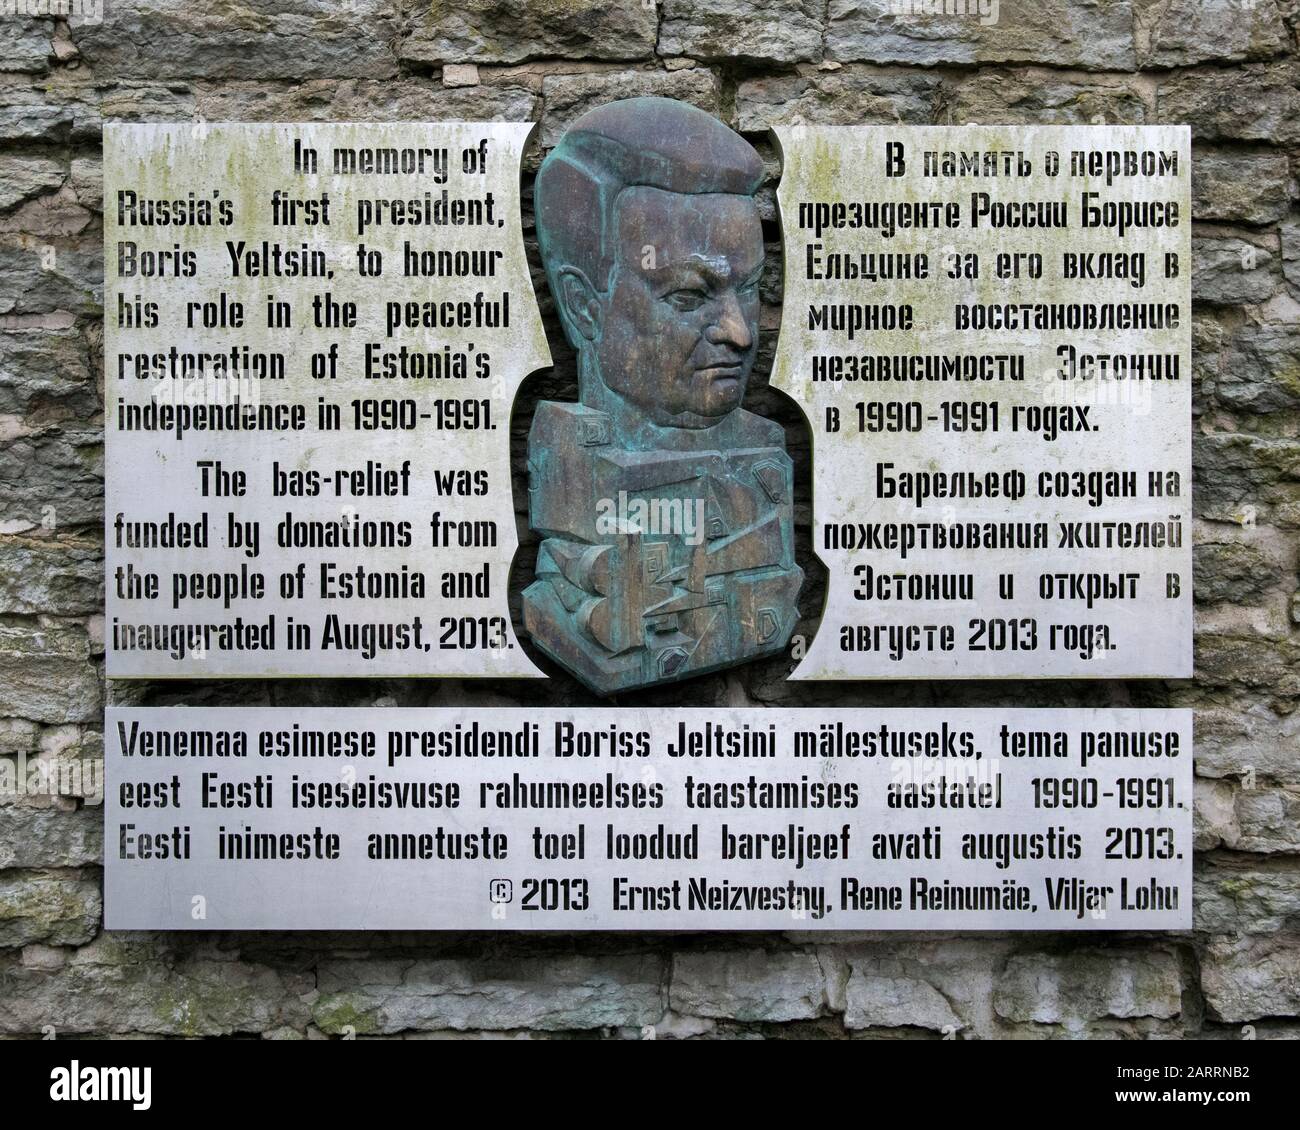 Lapide che onorano Boris Yeltsin per il ruolo svolto nel ripristino pacifico dell'indipendenza dell'Estonia nel 1990-1991. Tallinn, Estonia Foto Stock